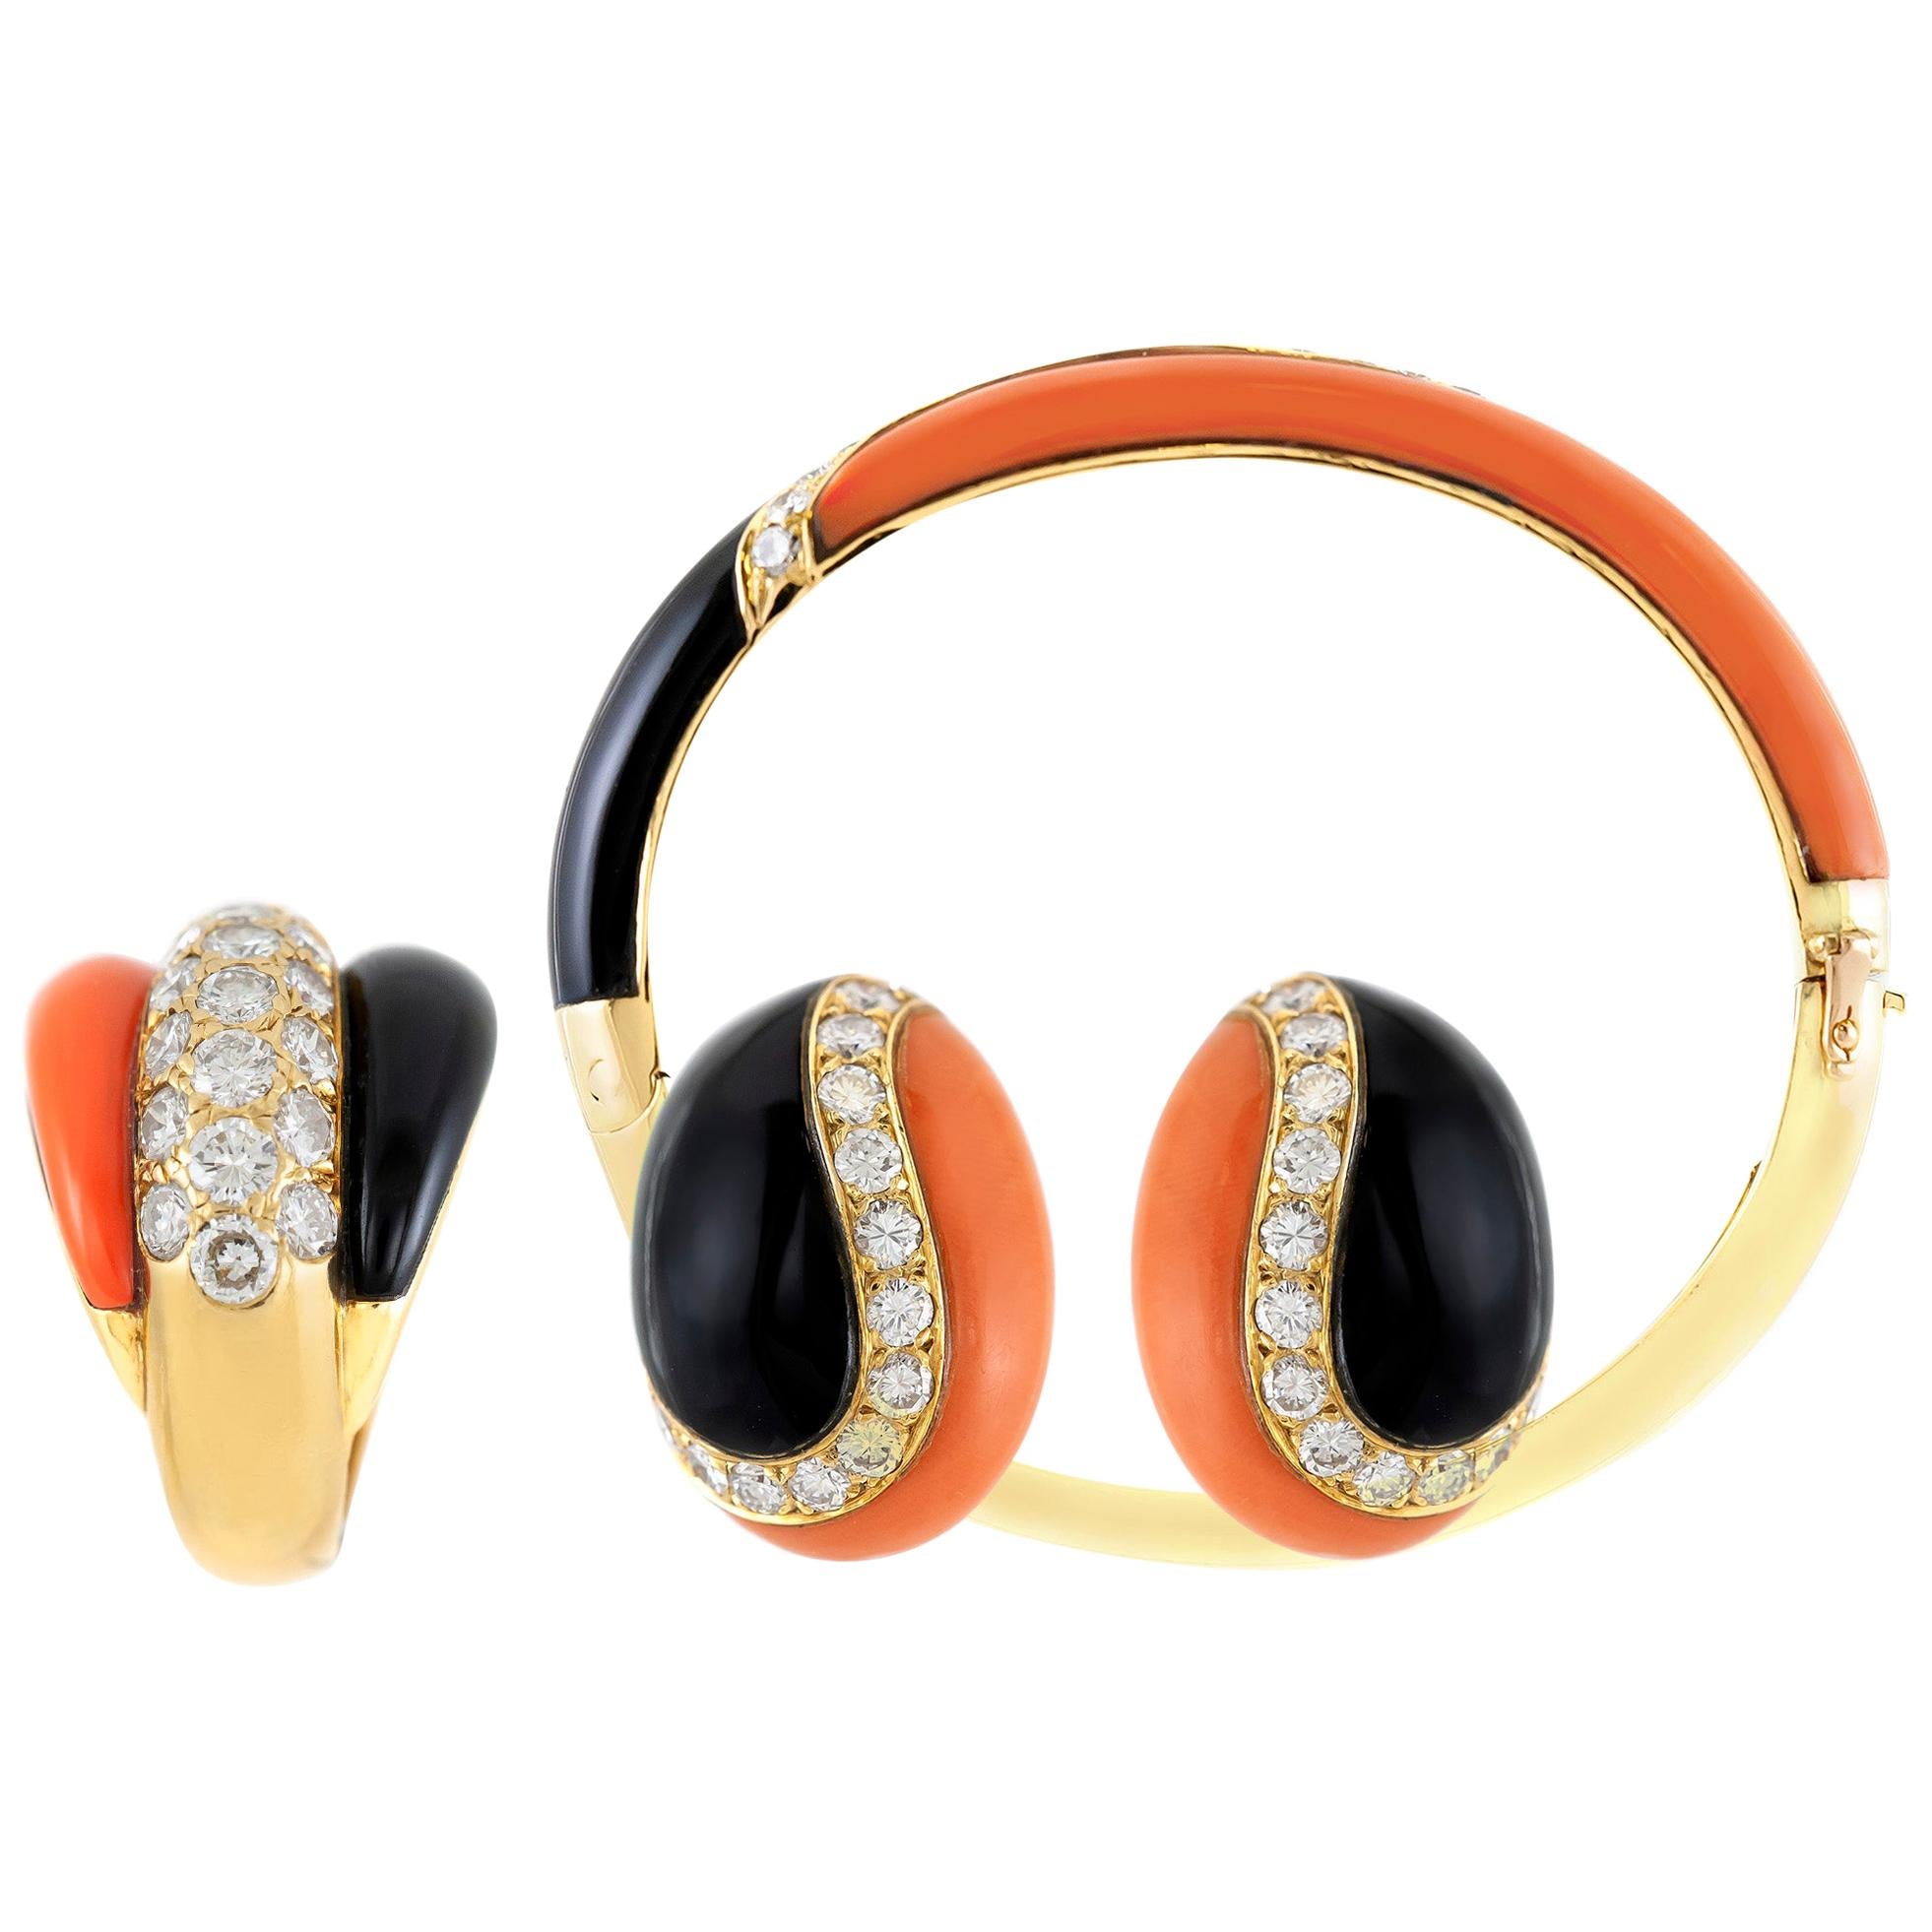 Van Cleef & Arpels magnifiques boucles d'oreilles, bracelet et bague en corail, onyx et diamants sertis